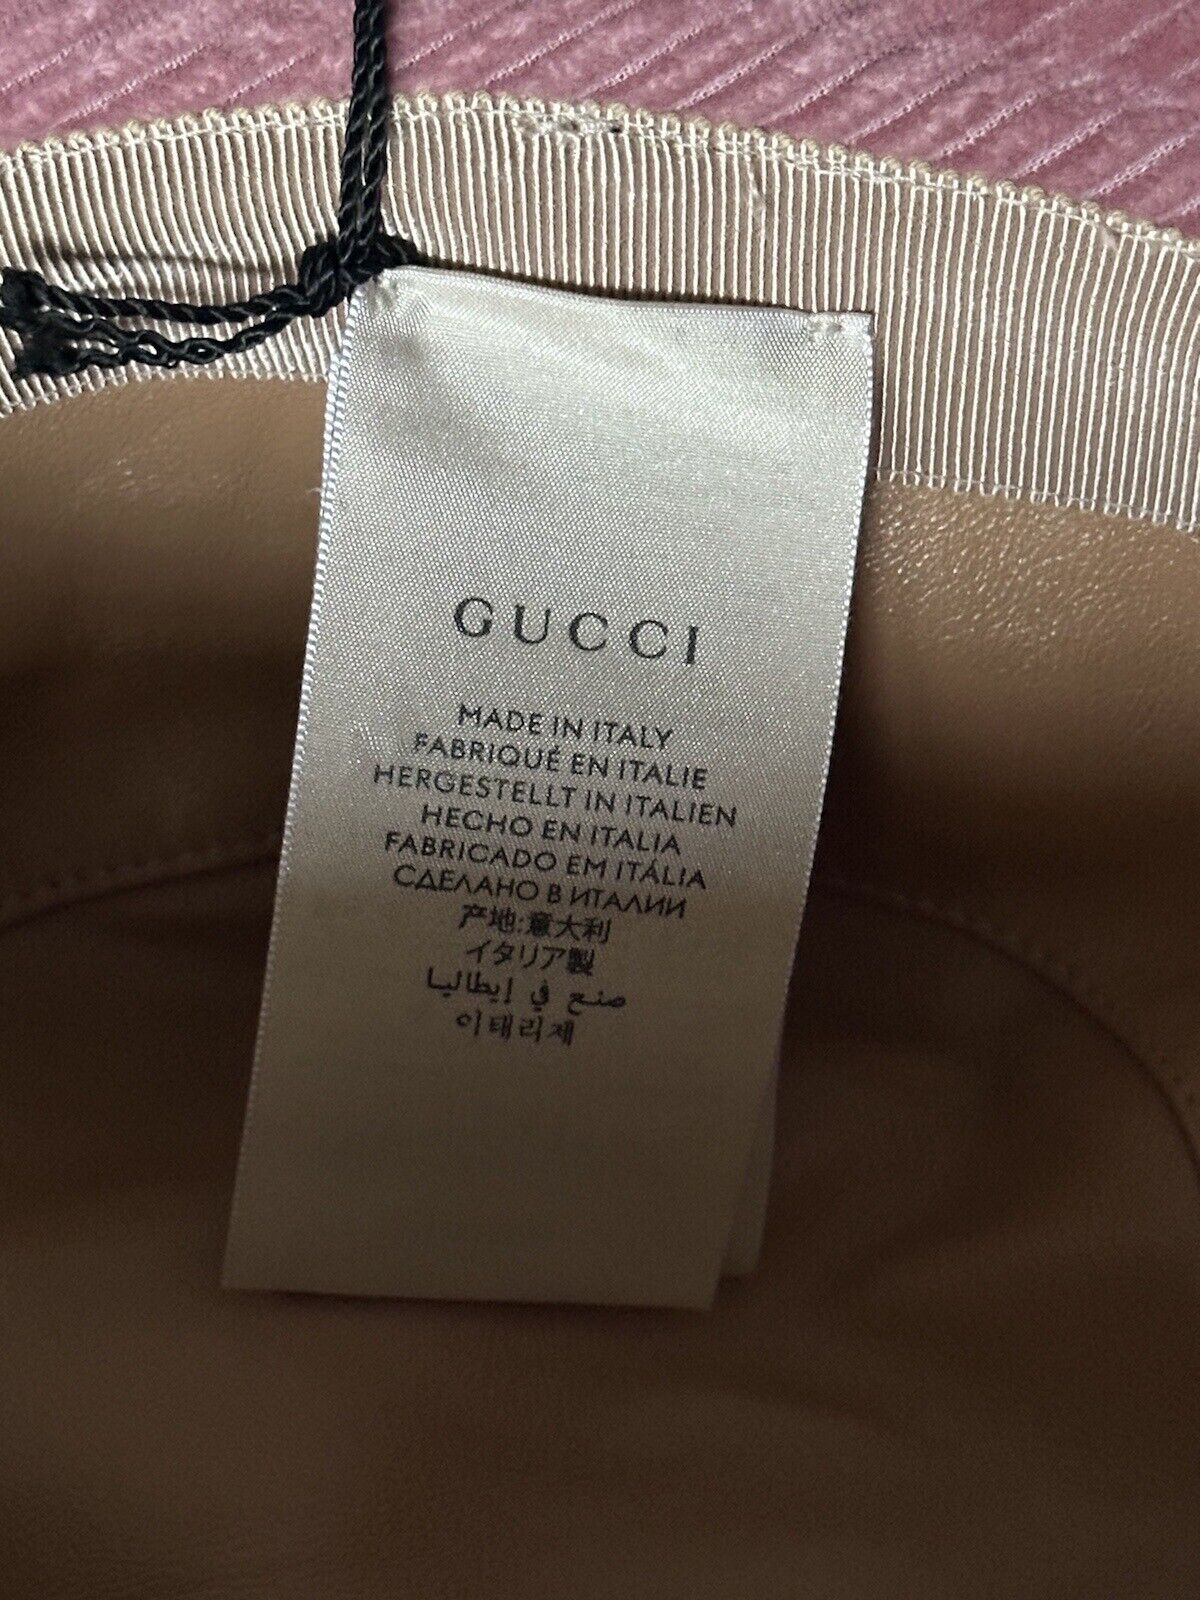 Neu mit Etikett: 430 $ Gucci Fischerhut aus rosa Samtcord für Damen M (57 cm) 679425 Italien 